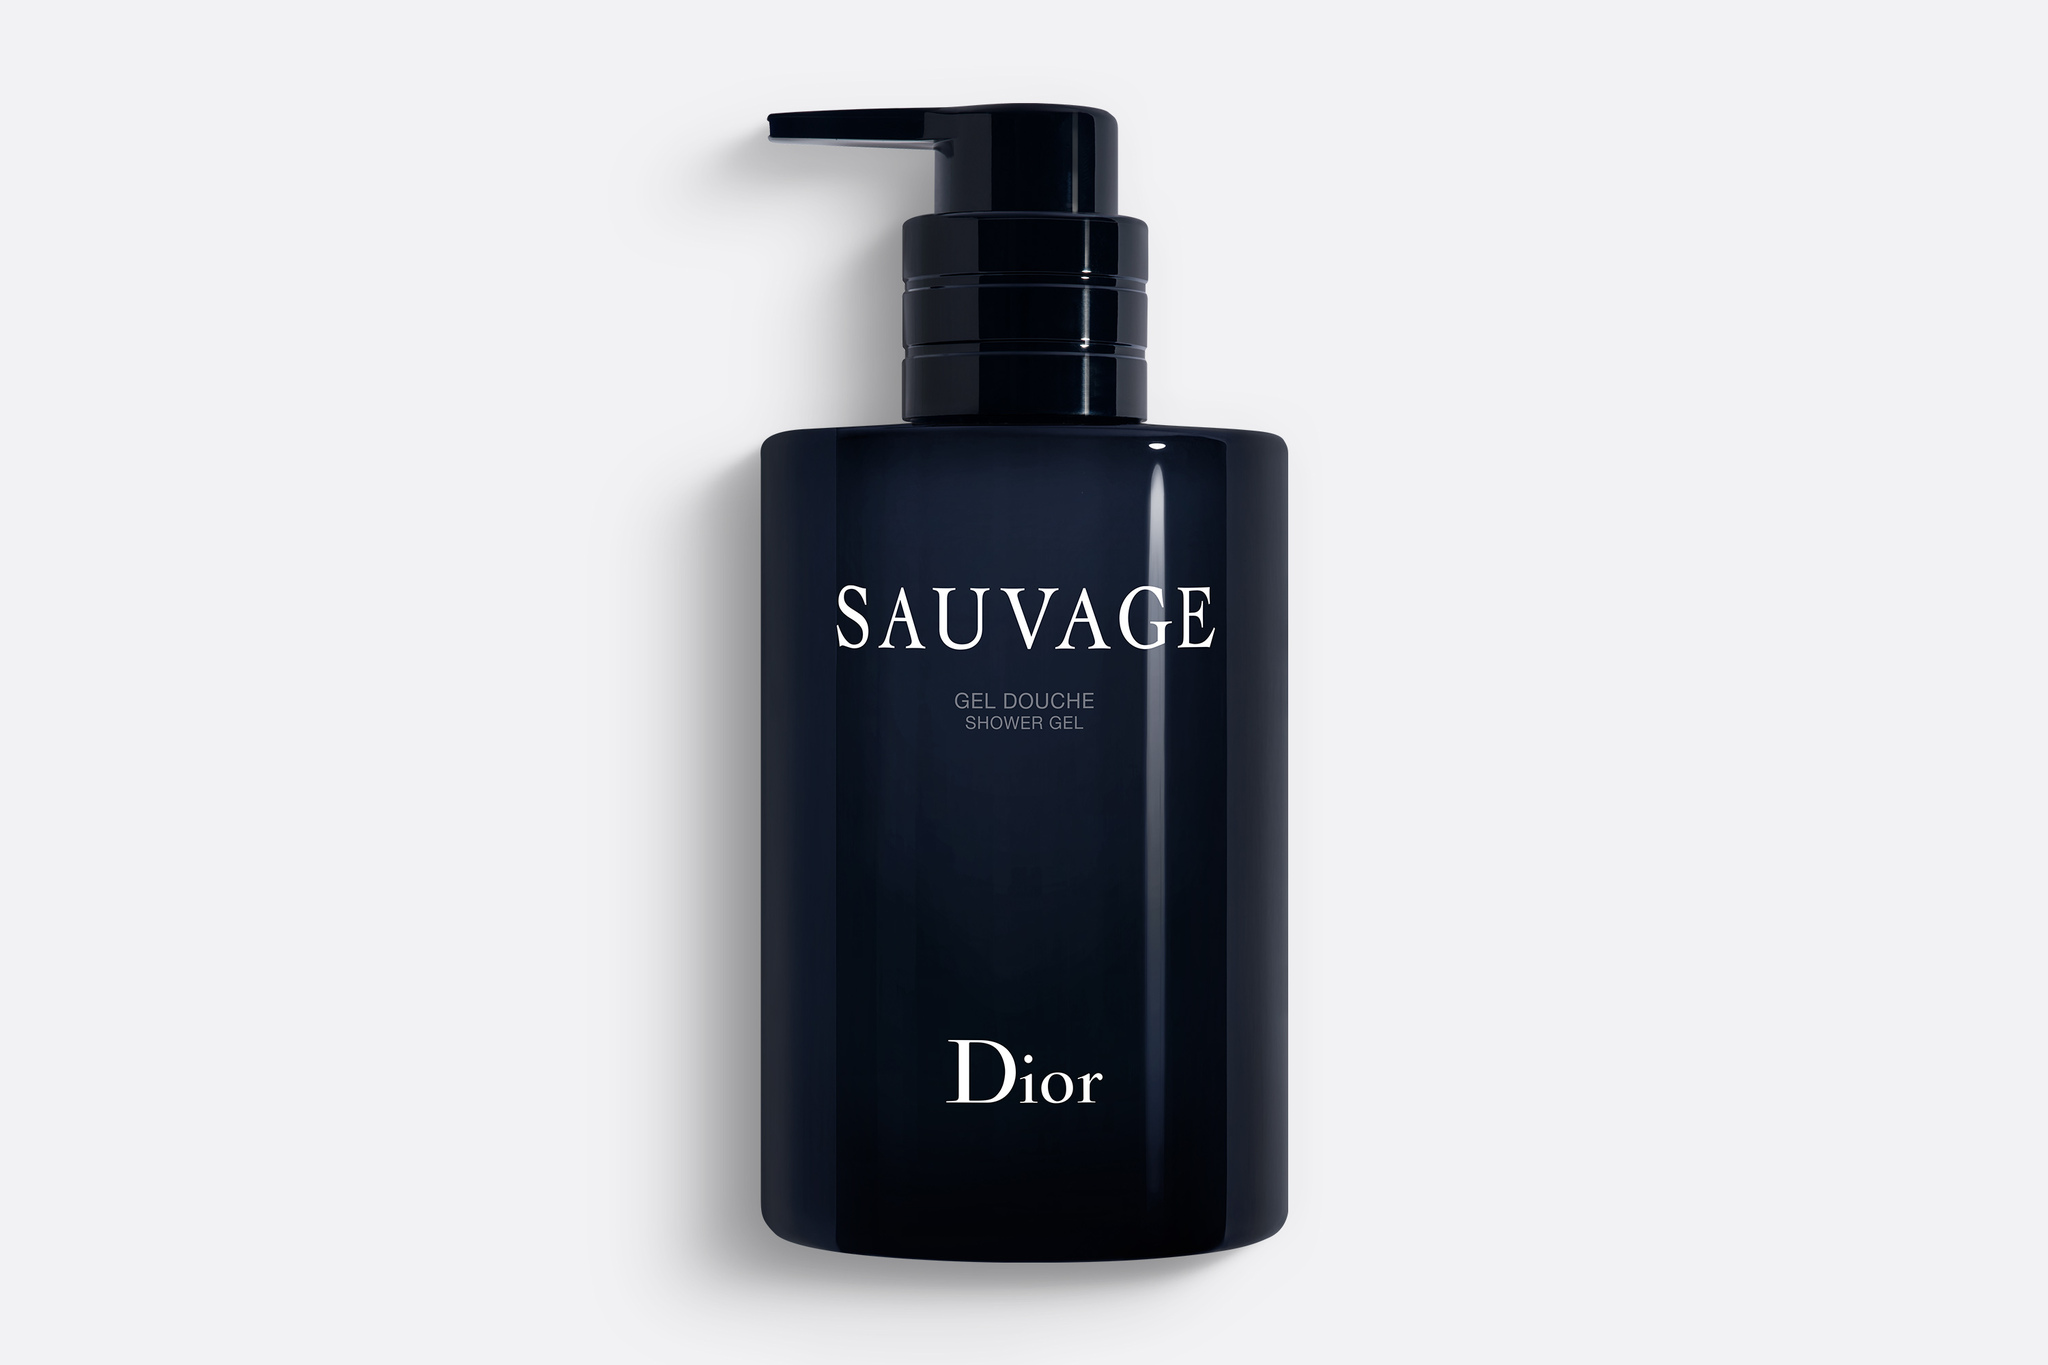 Рефилл спрея для путешествий  Официальный онлайнбутик Dior  Dior   официальный интернетмагазин парфюмерии и косметики Диор в России